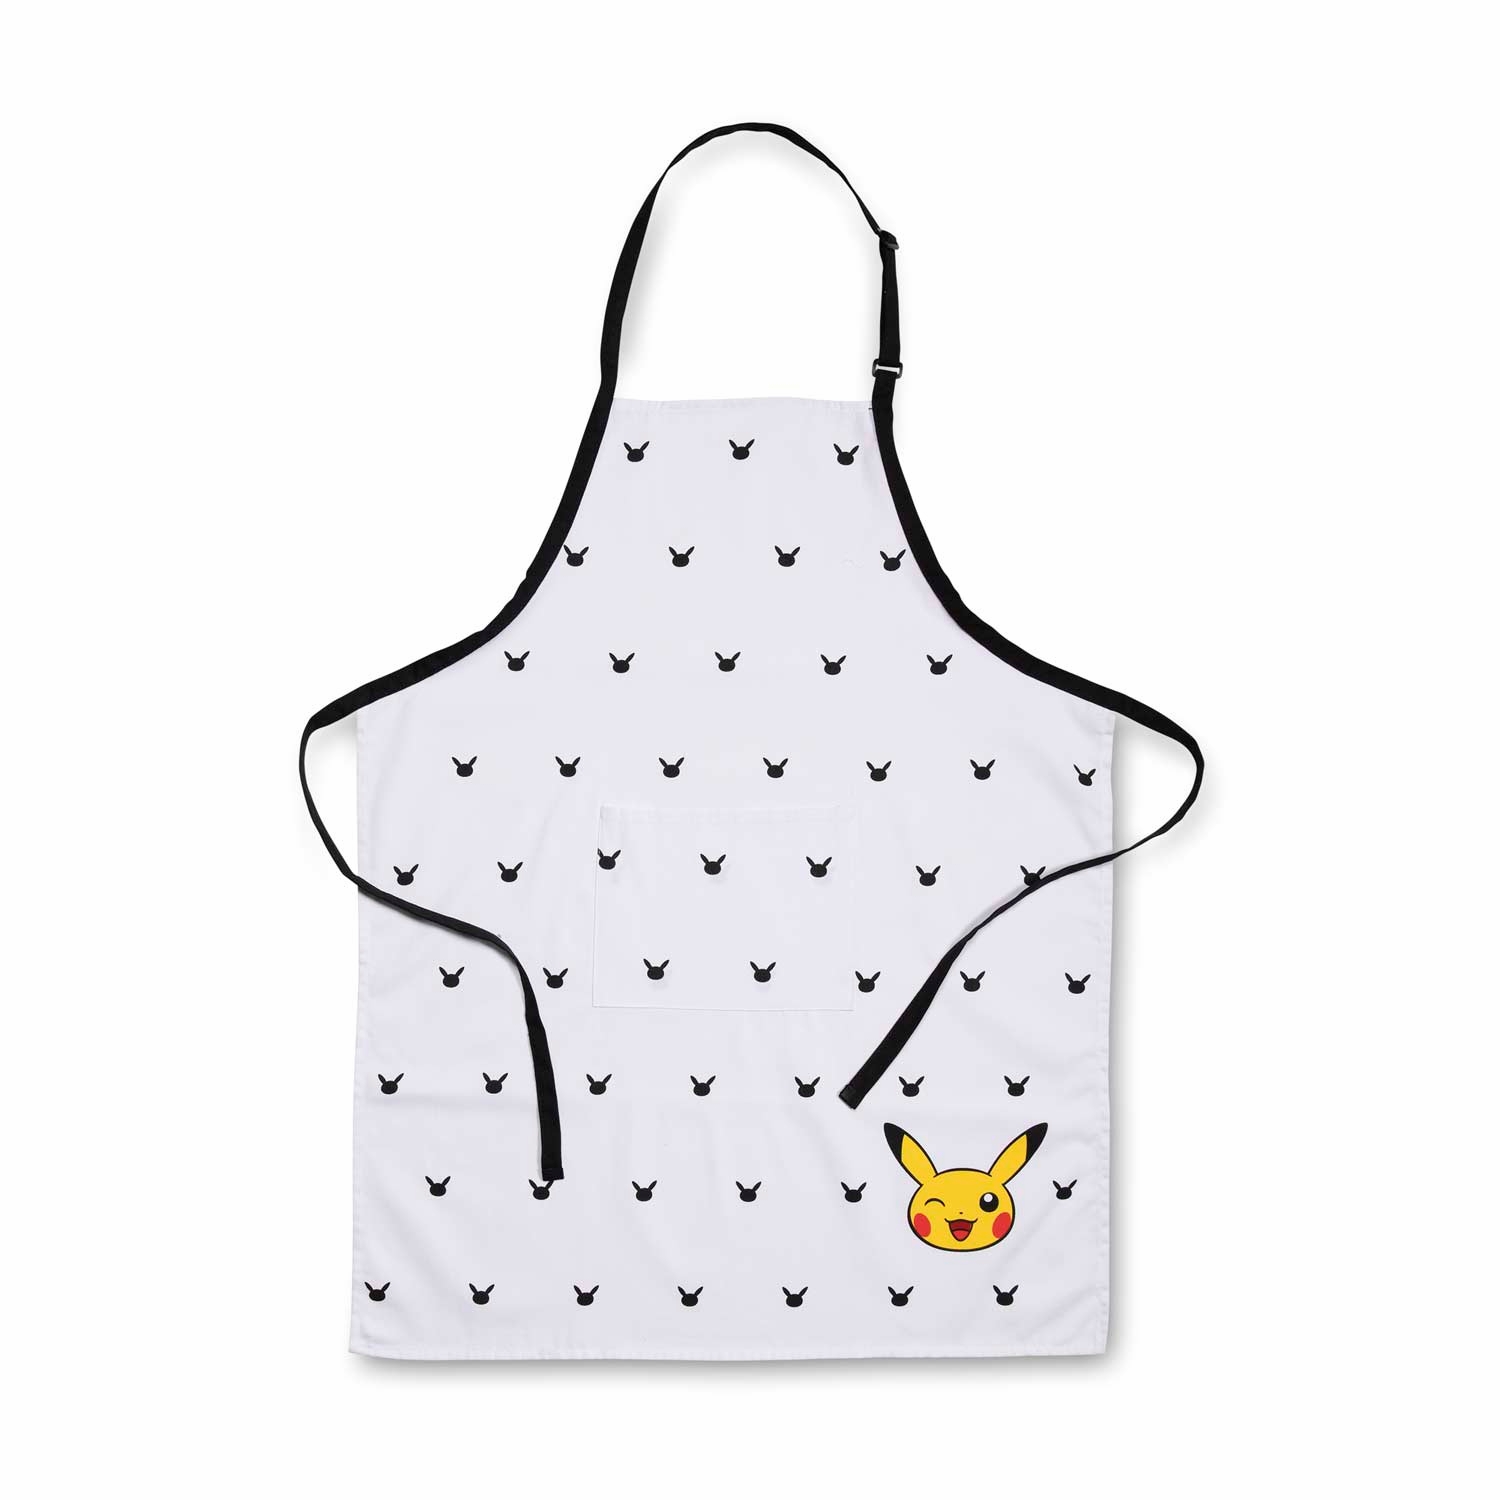 Pikachu_Kitchen_Apron_Product_Image.jpg